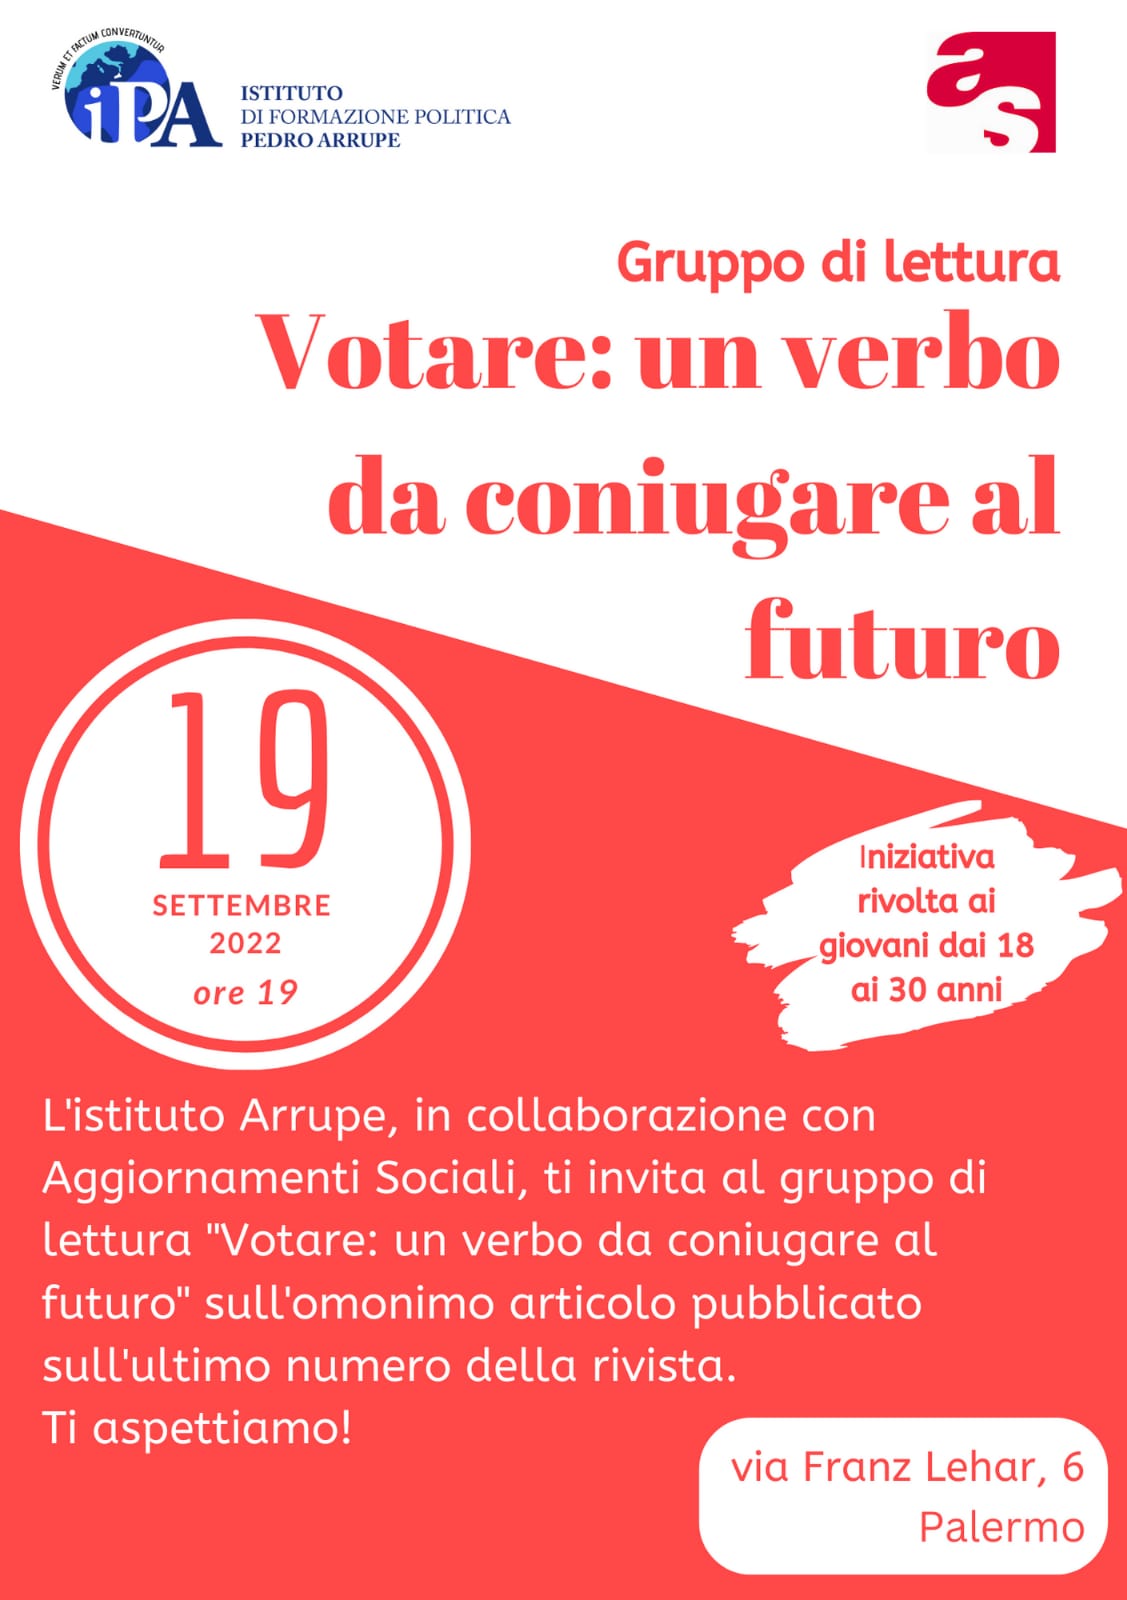 Gruppo di lettura “Votare: un verbo da coniugare al futuro”